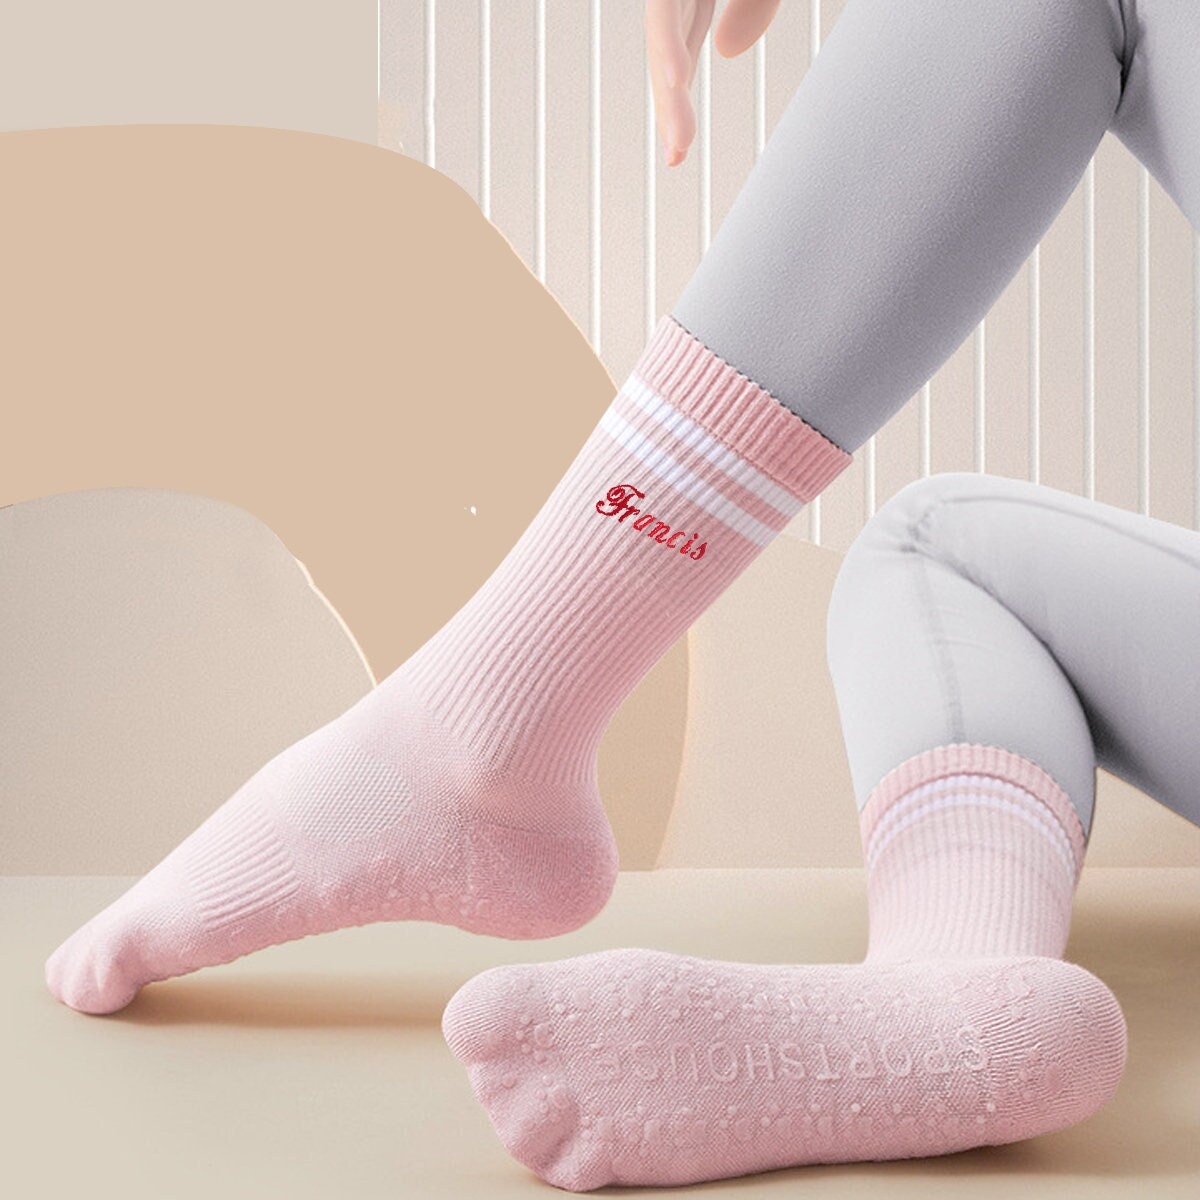 Yoga Socks, Gripped Yoga Socks, Non-slip Pilates Socks, Gripped